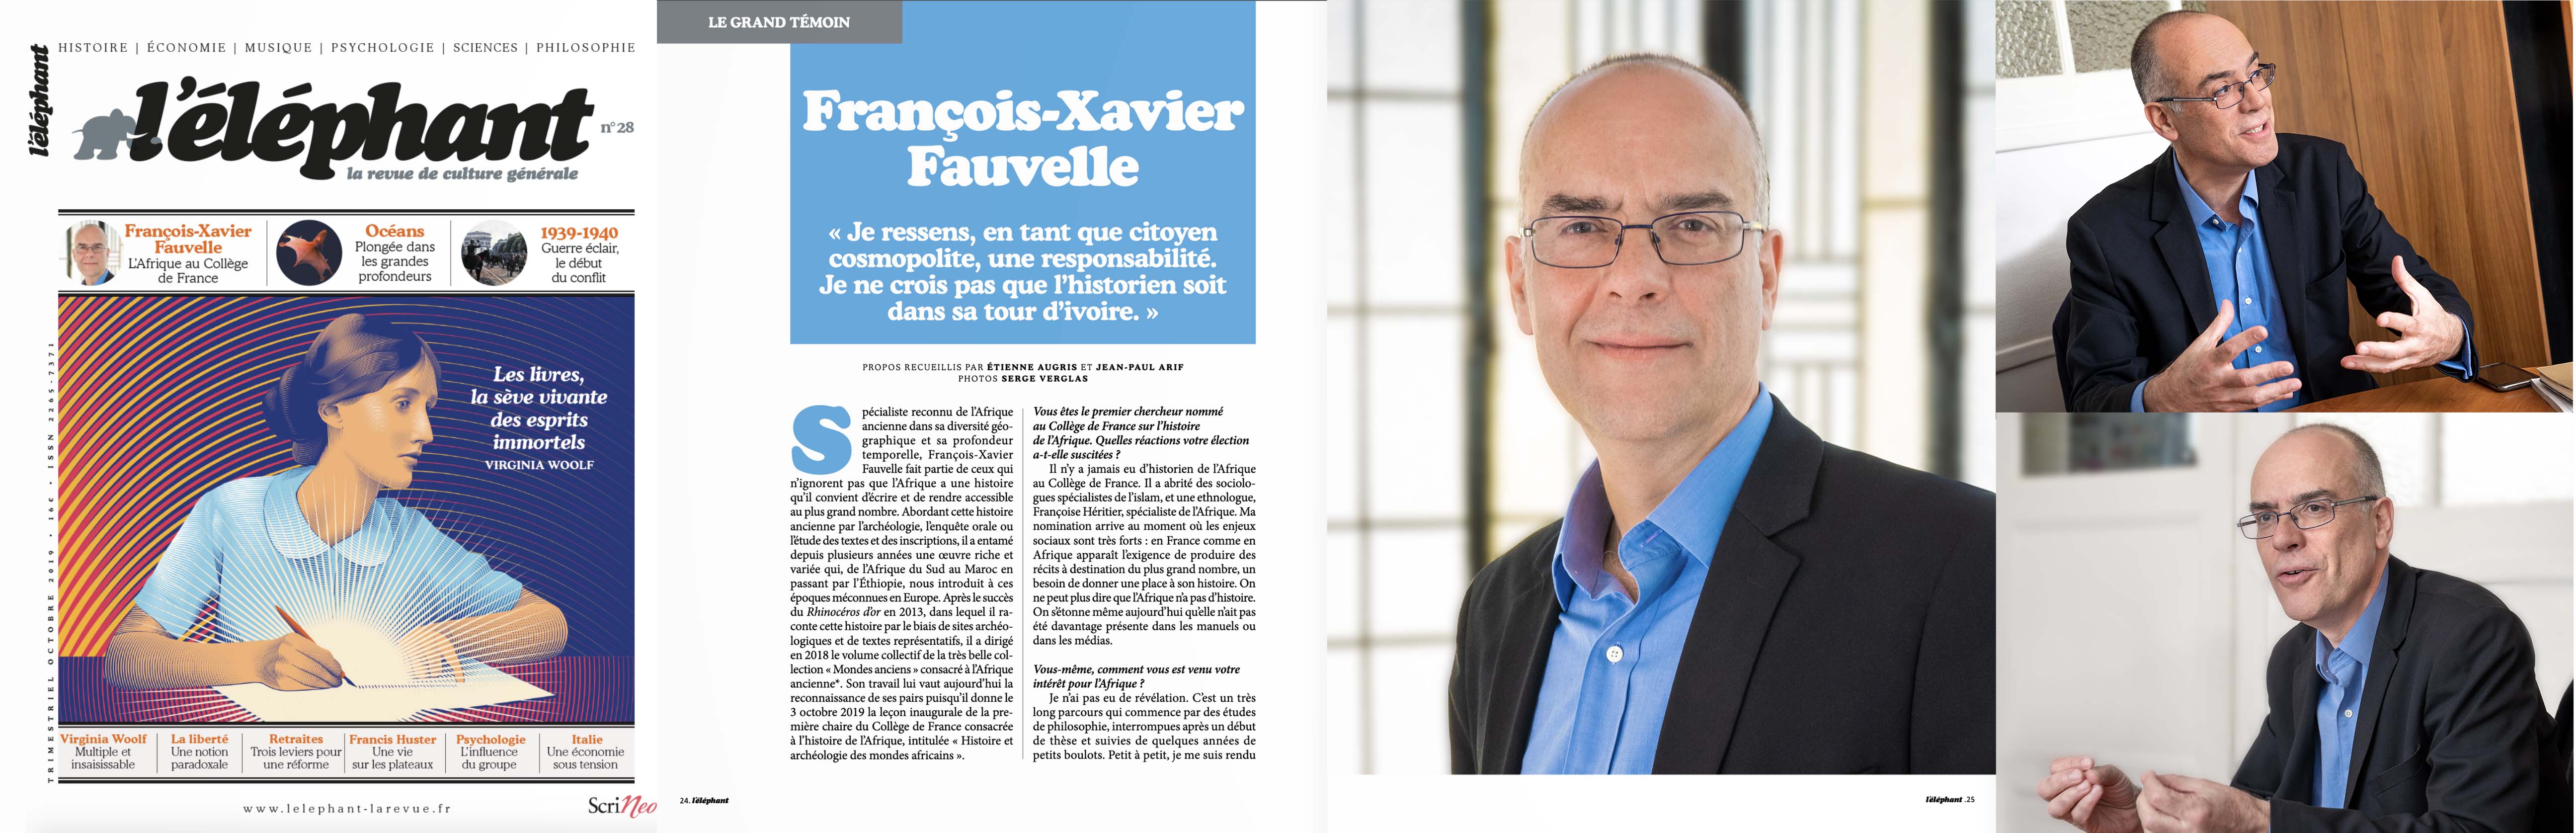 FRANCOIS XAVIER FAUVELLE